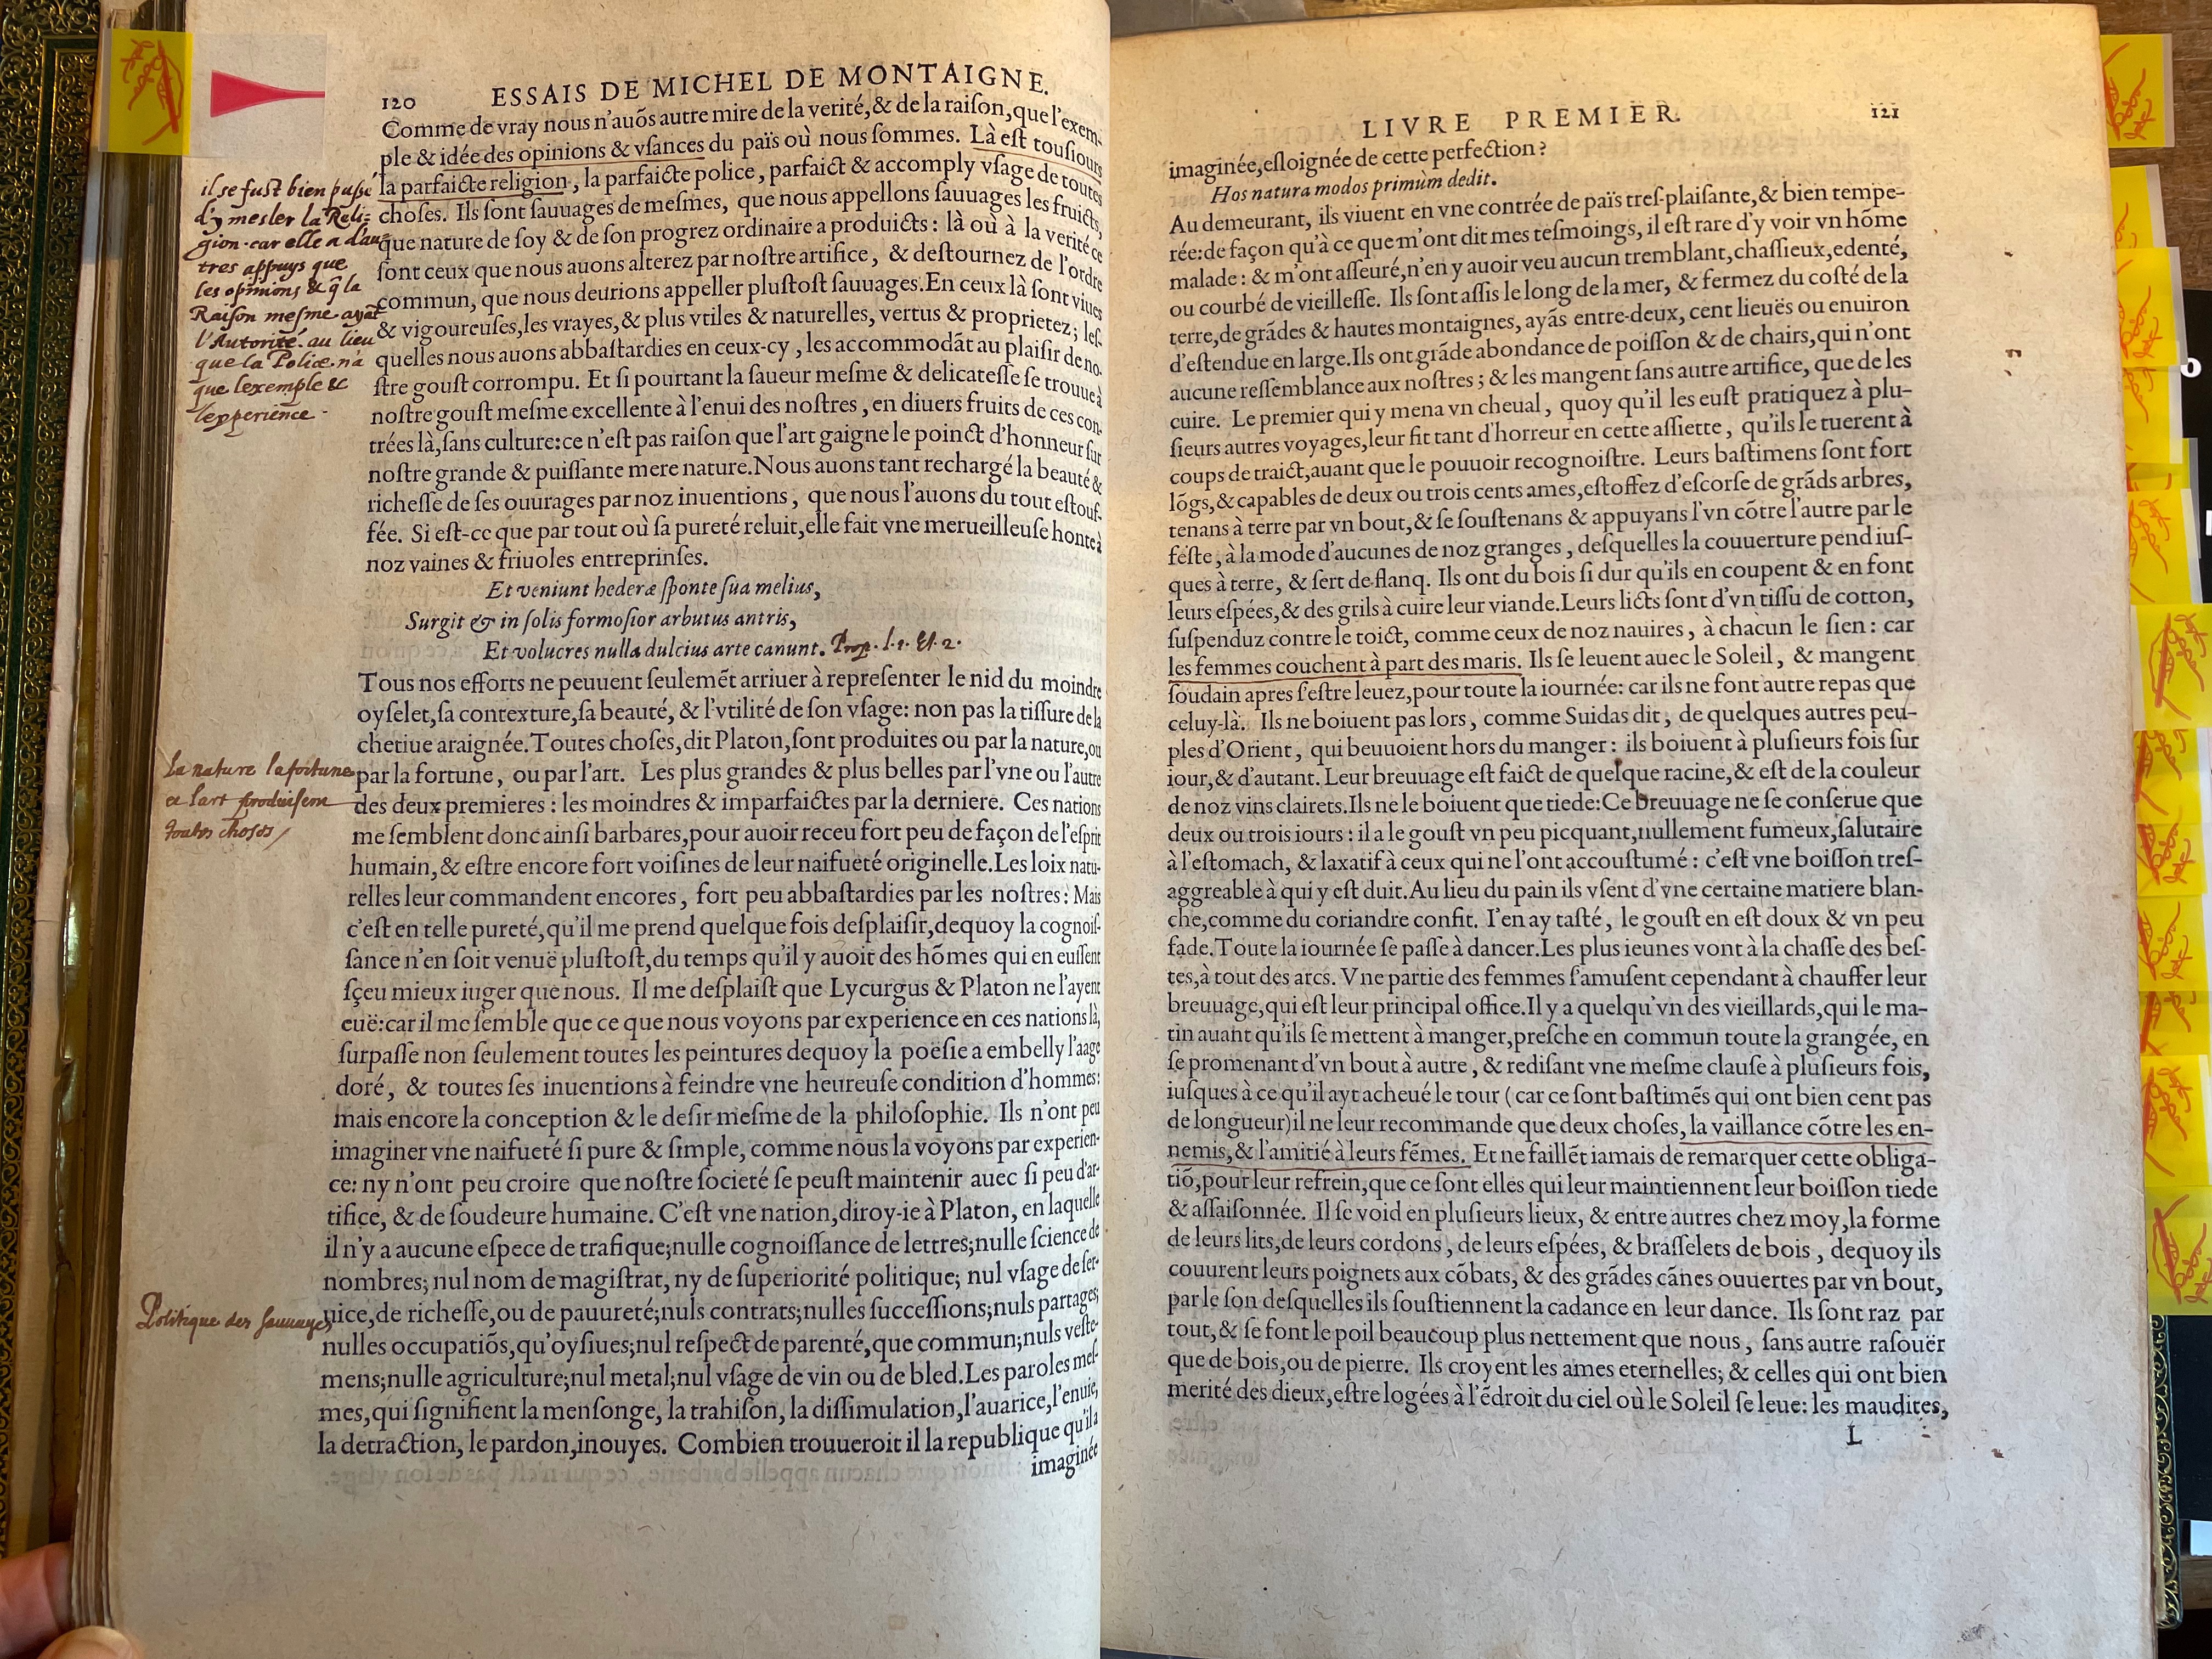 6. - p. 120-121, Livre I. Les Essais, 1595. Exemplaire Laval.